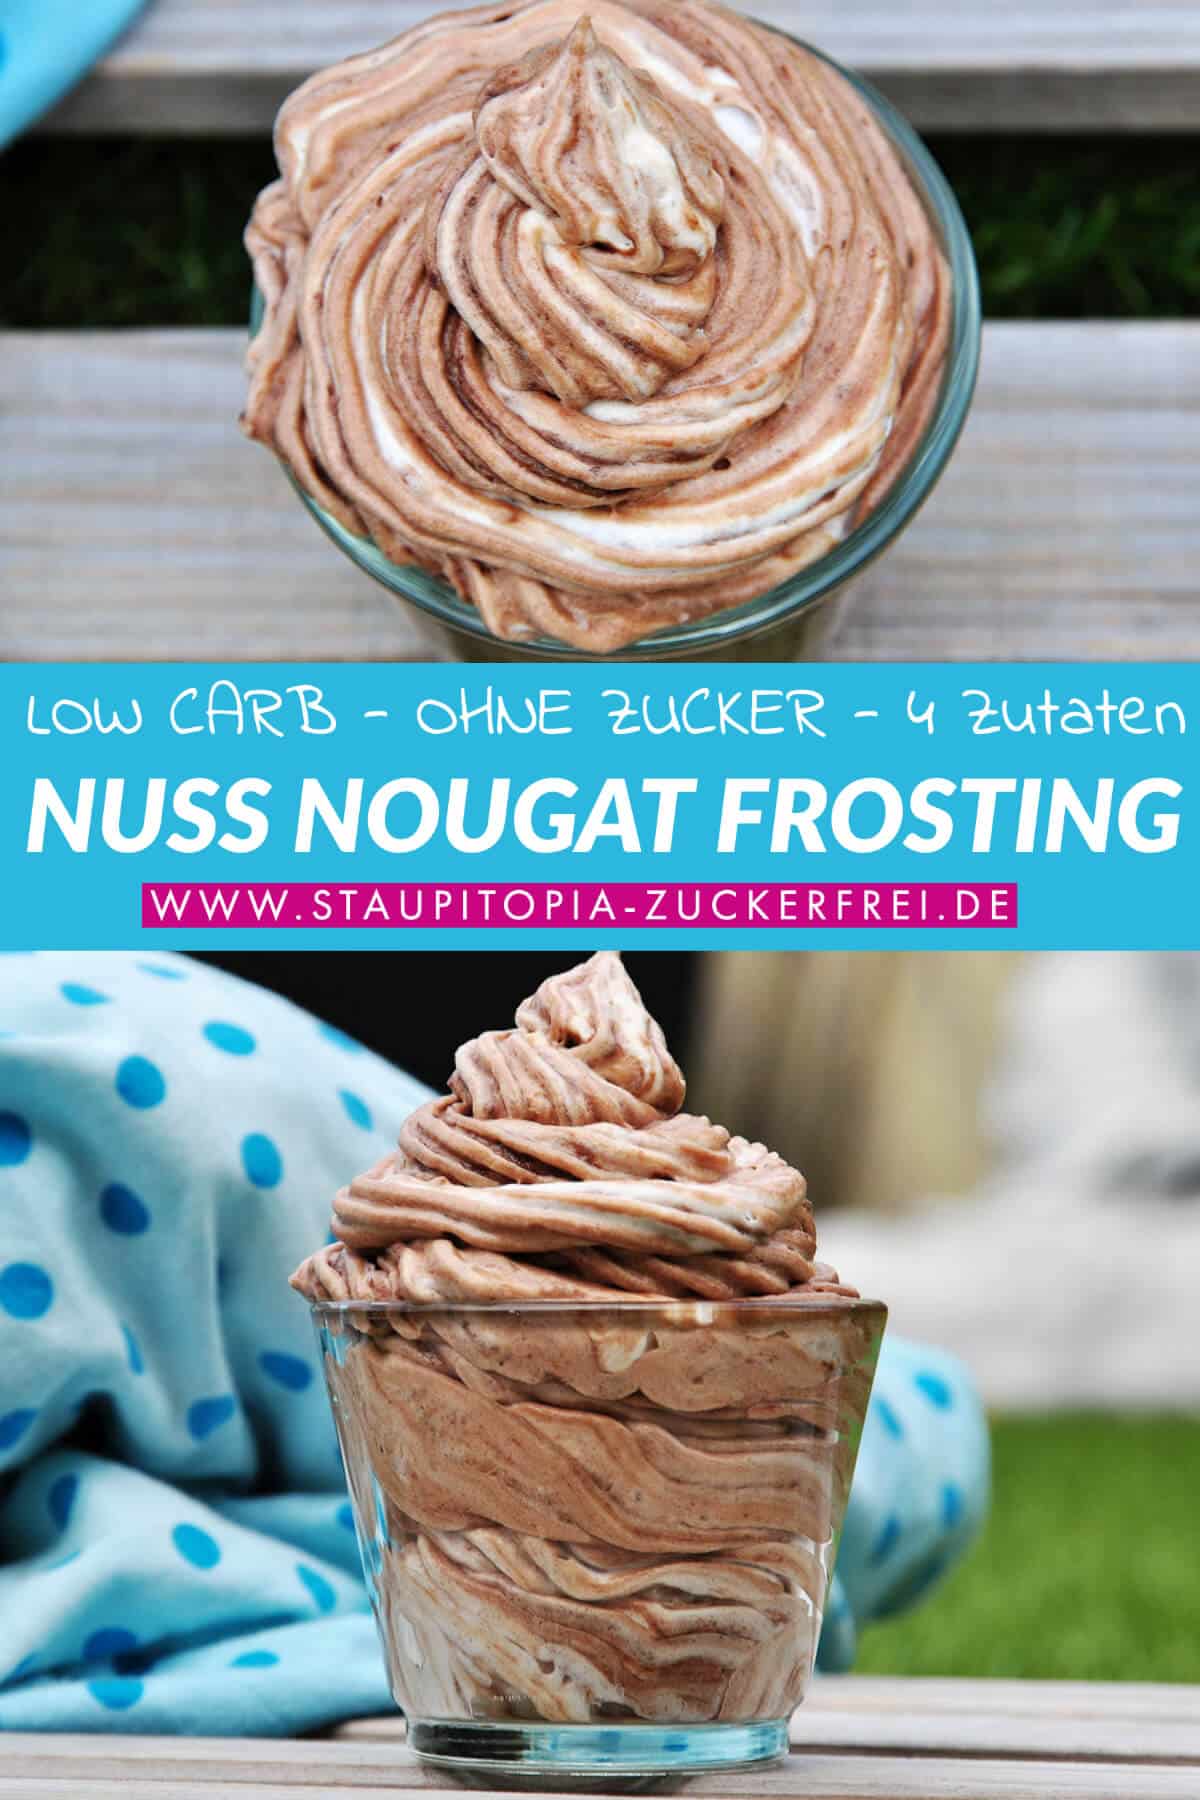 Nutella Fans aufgepasst: Wer Nutella mag, wird dieses Low Carb Nuss-Nougat Frosting Rezept lieben. Kombiniere das Nuss-Nougat Frosting mit einem Kuchenboden oder Muffins und mache somit leckere Torten oder Cupcakes ganz einfach selber.